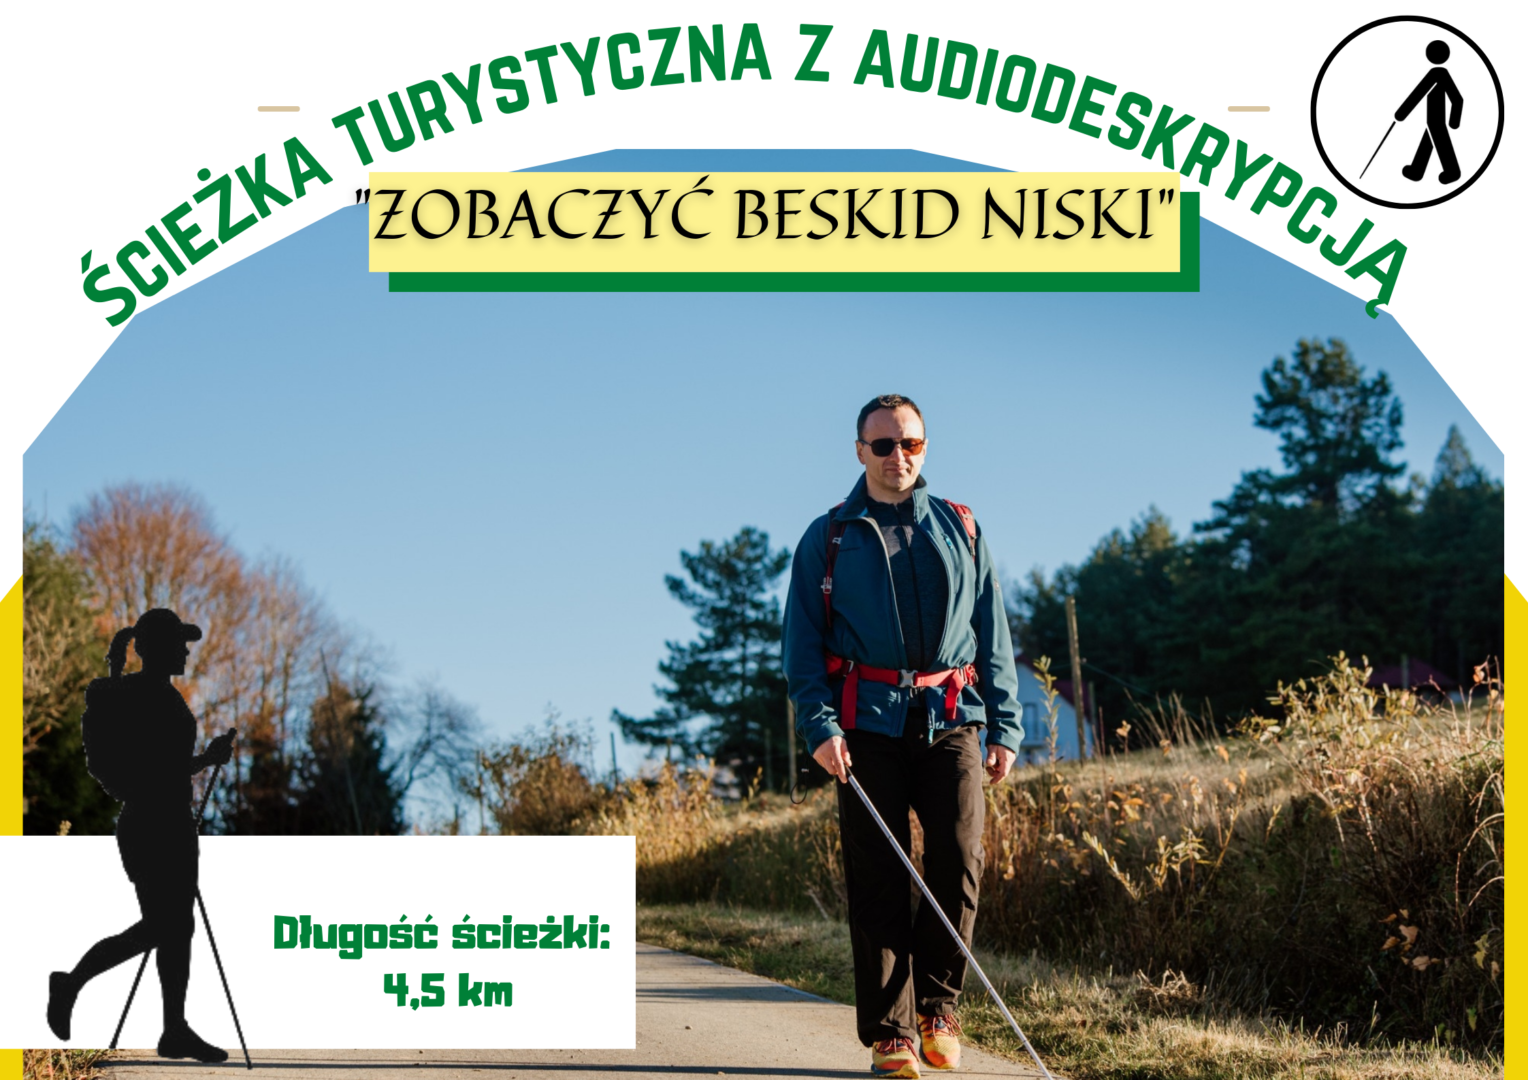 Obrazek reklamuje projekt "Zobaczyć Beskid Niski - ścieżka z audiodeskrypcją" w Olchowcu. Przedstawia osobę niewidomą, która wędruje szlakiem górskim w Olchowcu. Z dolnym rogu obrazka znajduje się informacja o długości szlaku, który wynosi 4,5 km